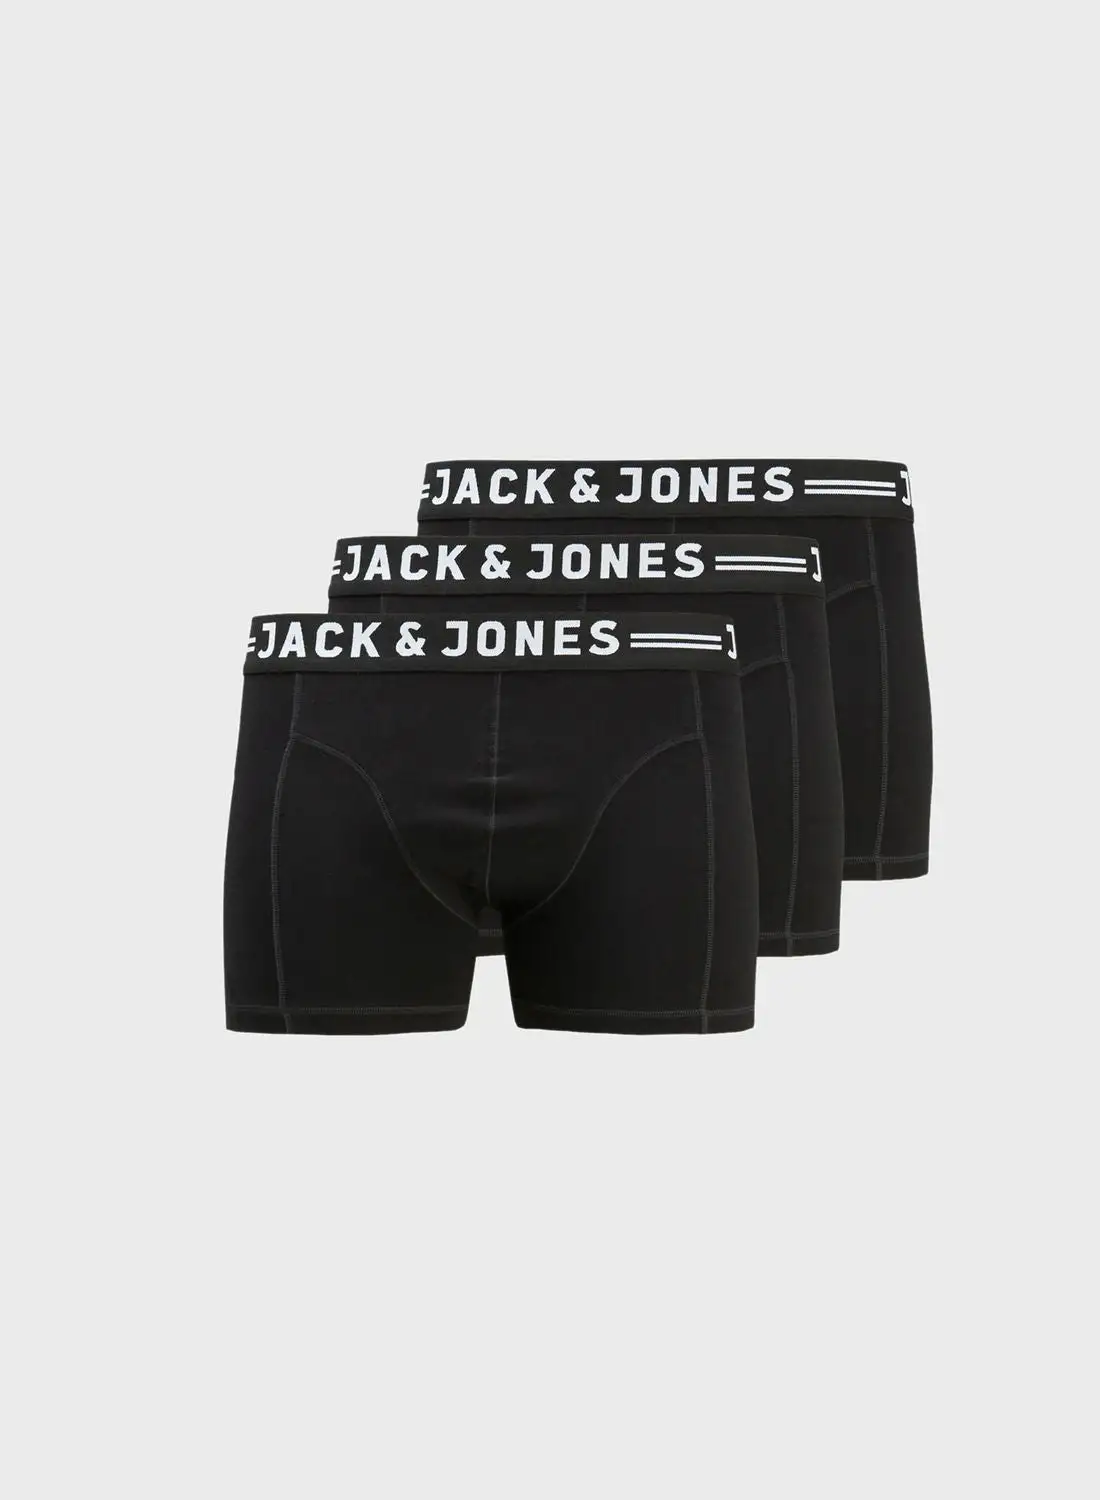 مجموعة بوكسرات جاك آند جونز مكونة من 3 قطع بشعار الماركة